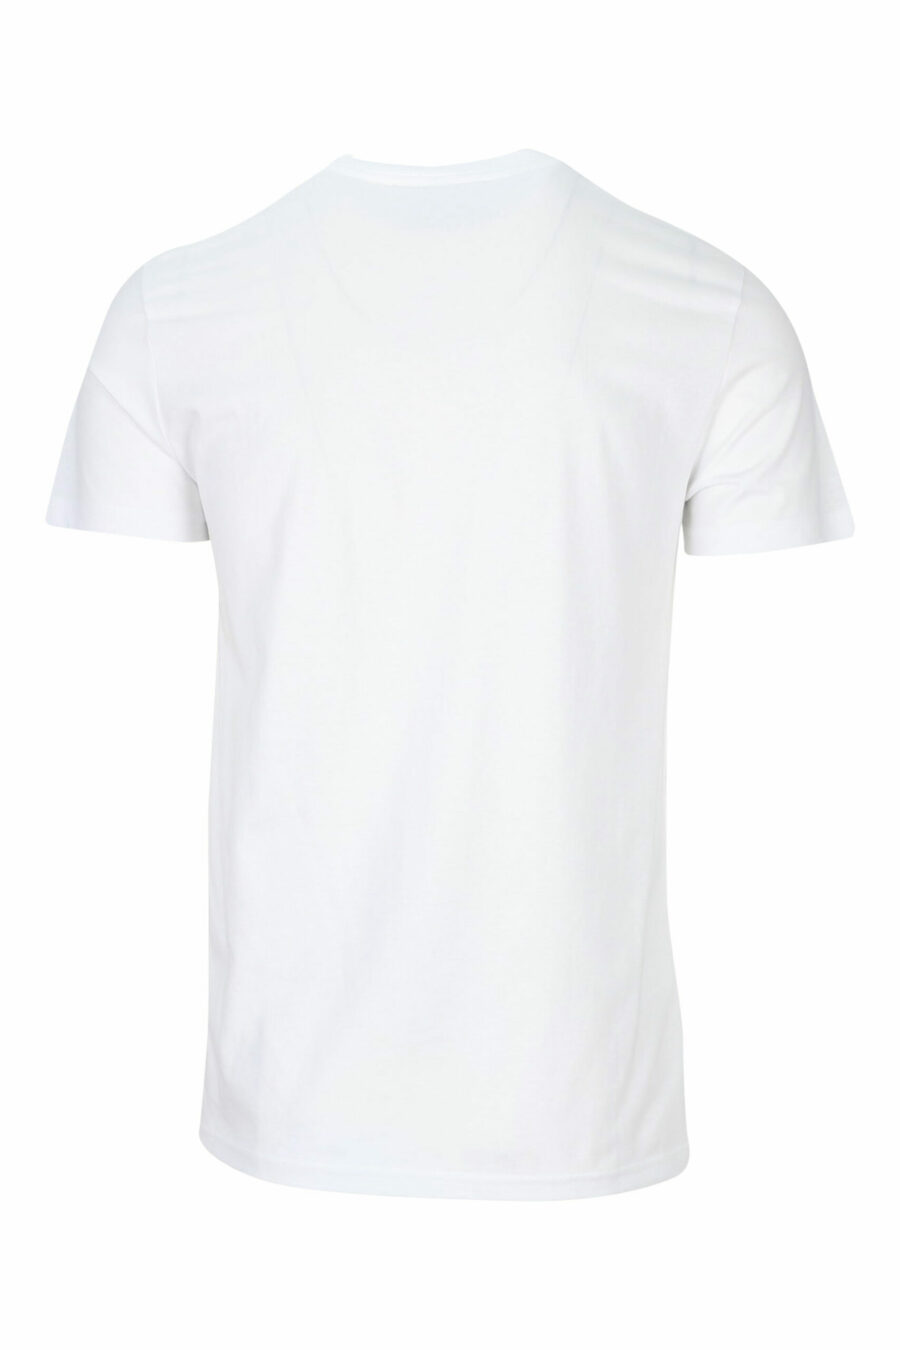 T-shirt blanc avec maxilogue classique en or brillant - 8052019456738 1 scaled